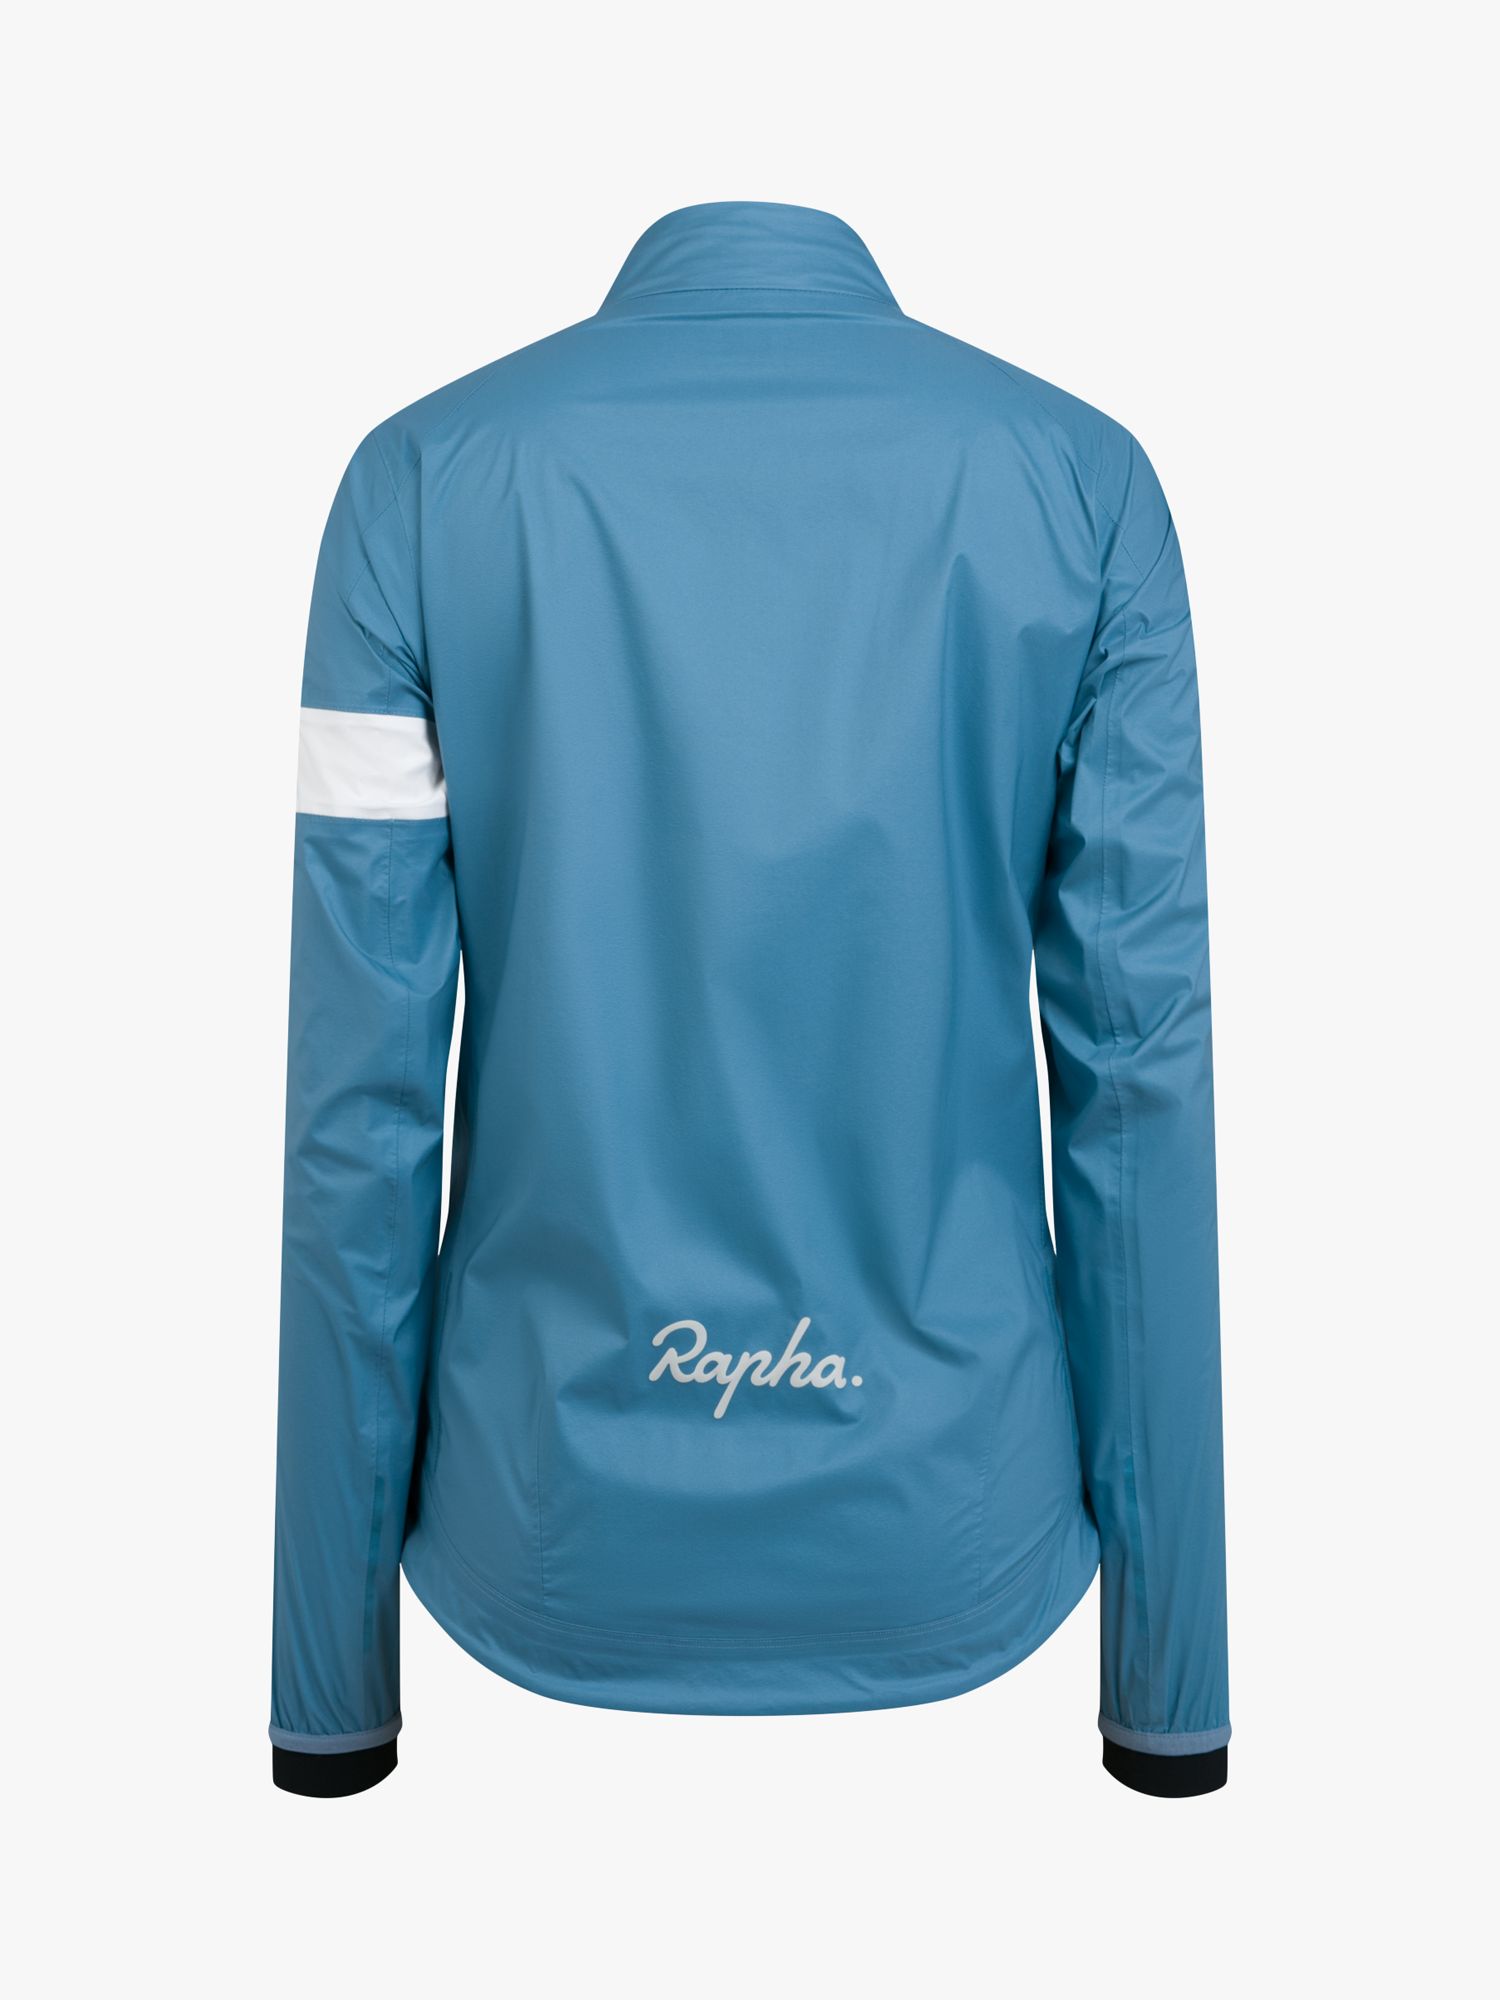 Rapha Women's Core Rain Jacket II, Mid Blue, L